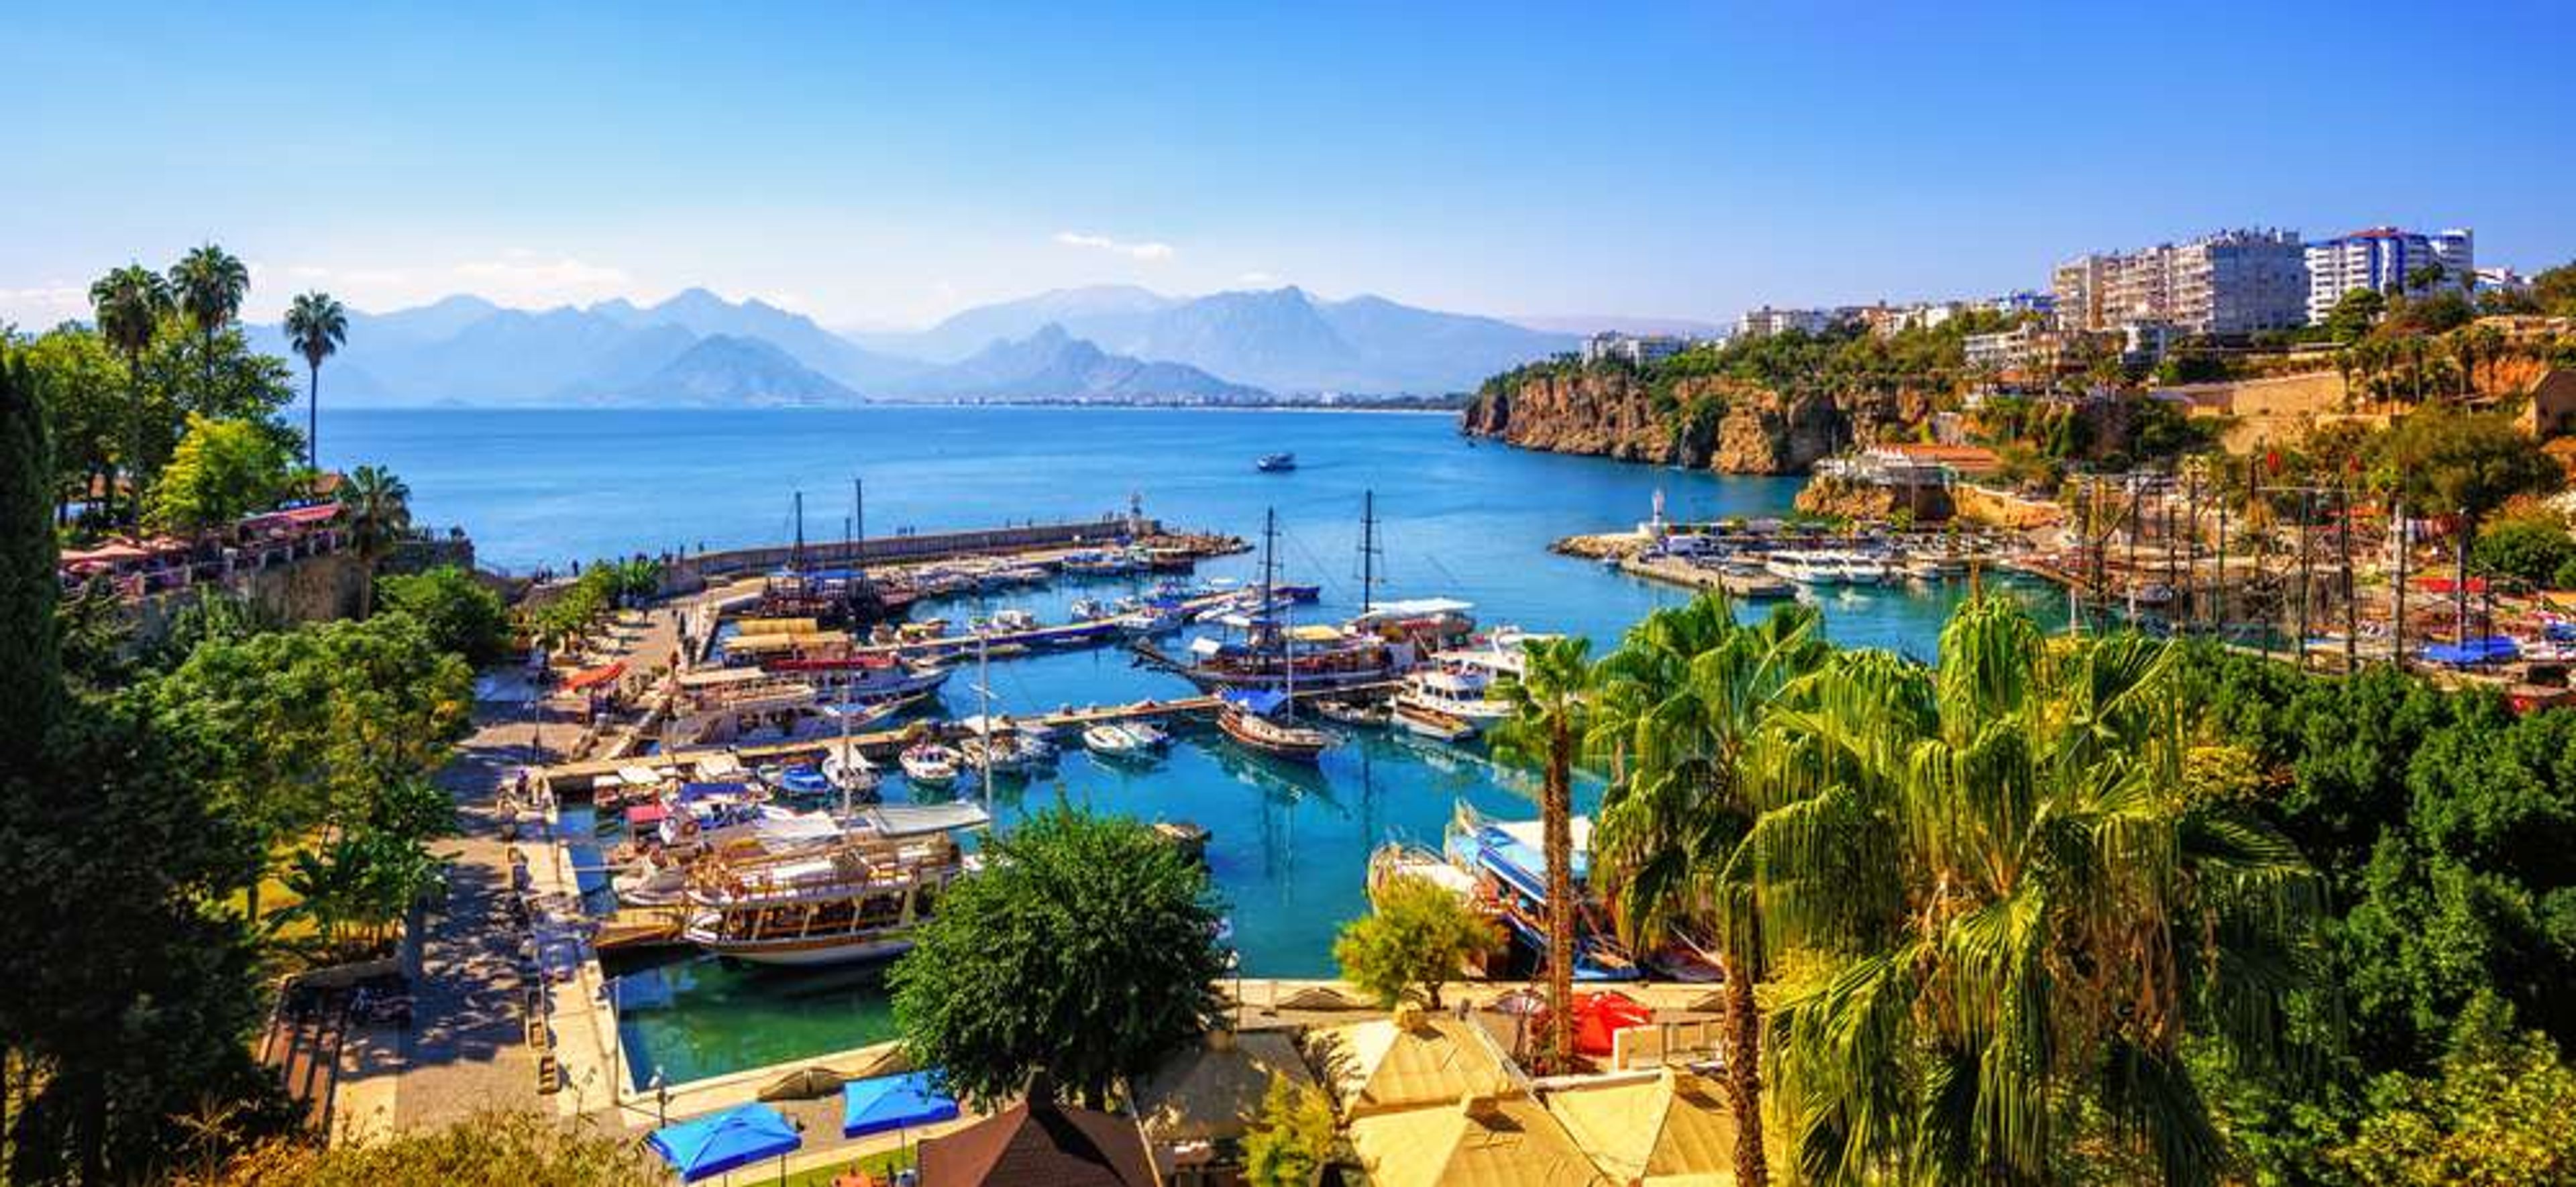 Turkije Antalya Taurus mountains and Mediterrranean Sea